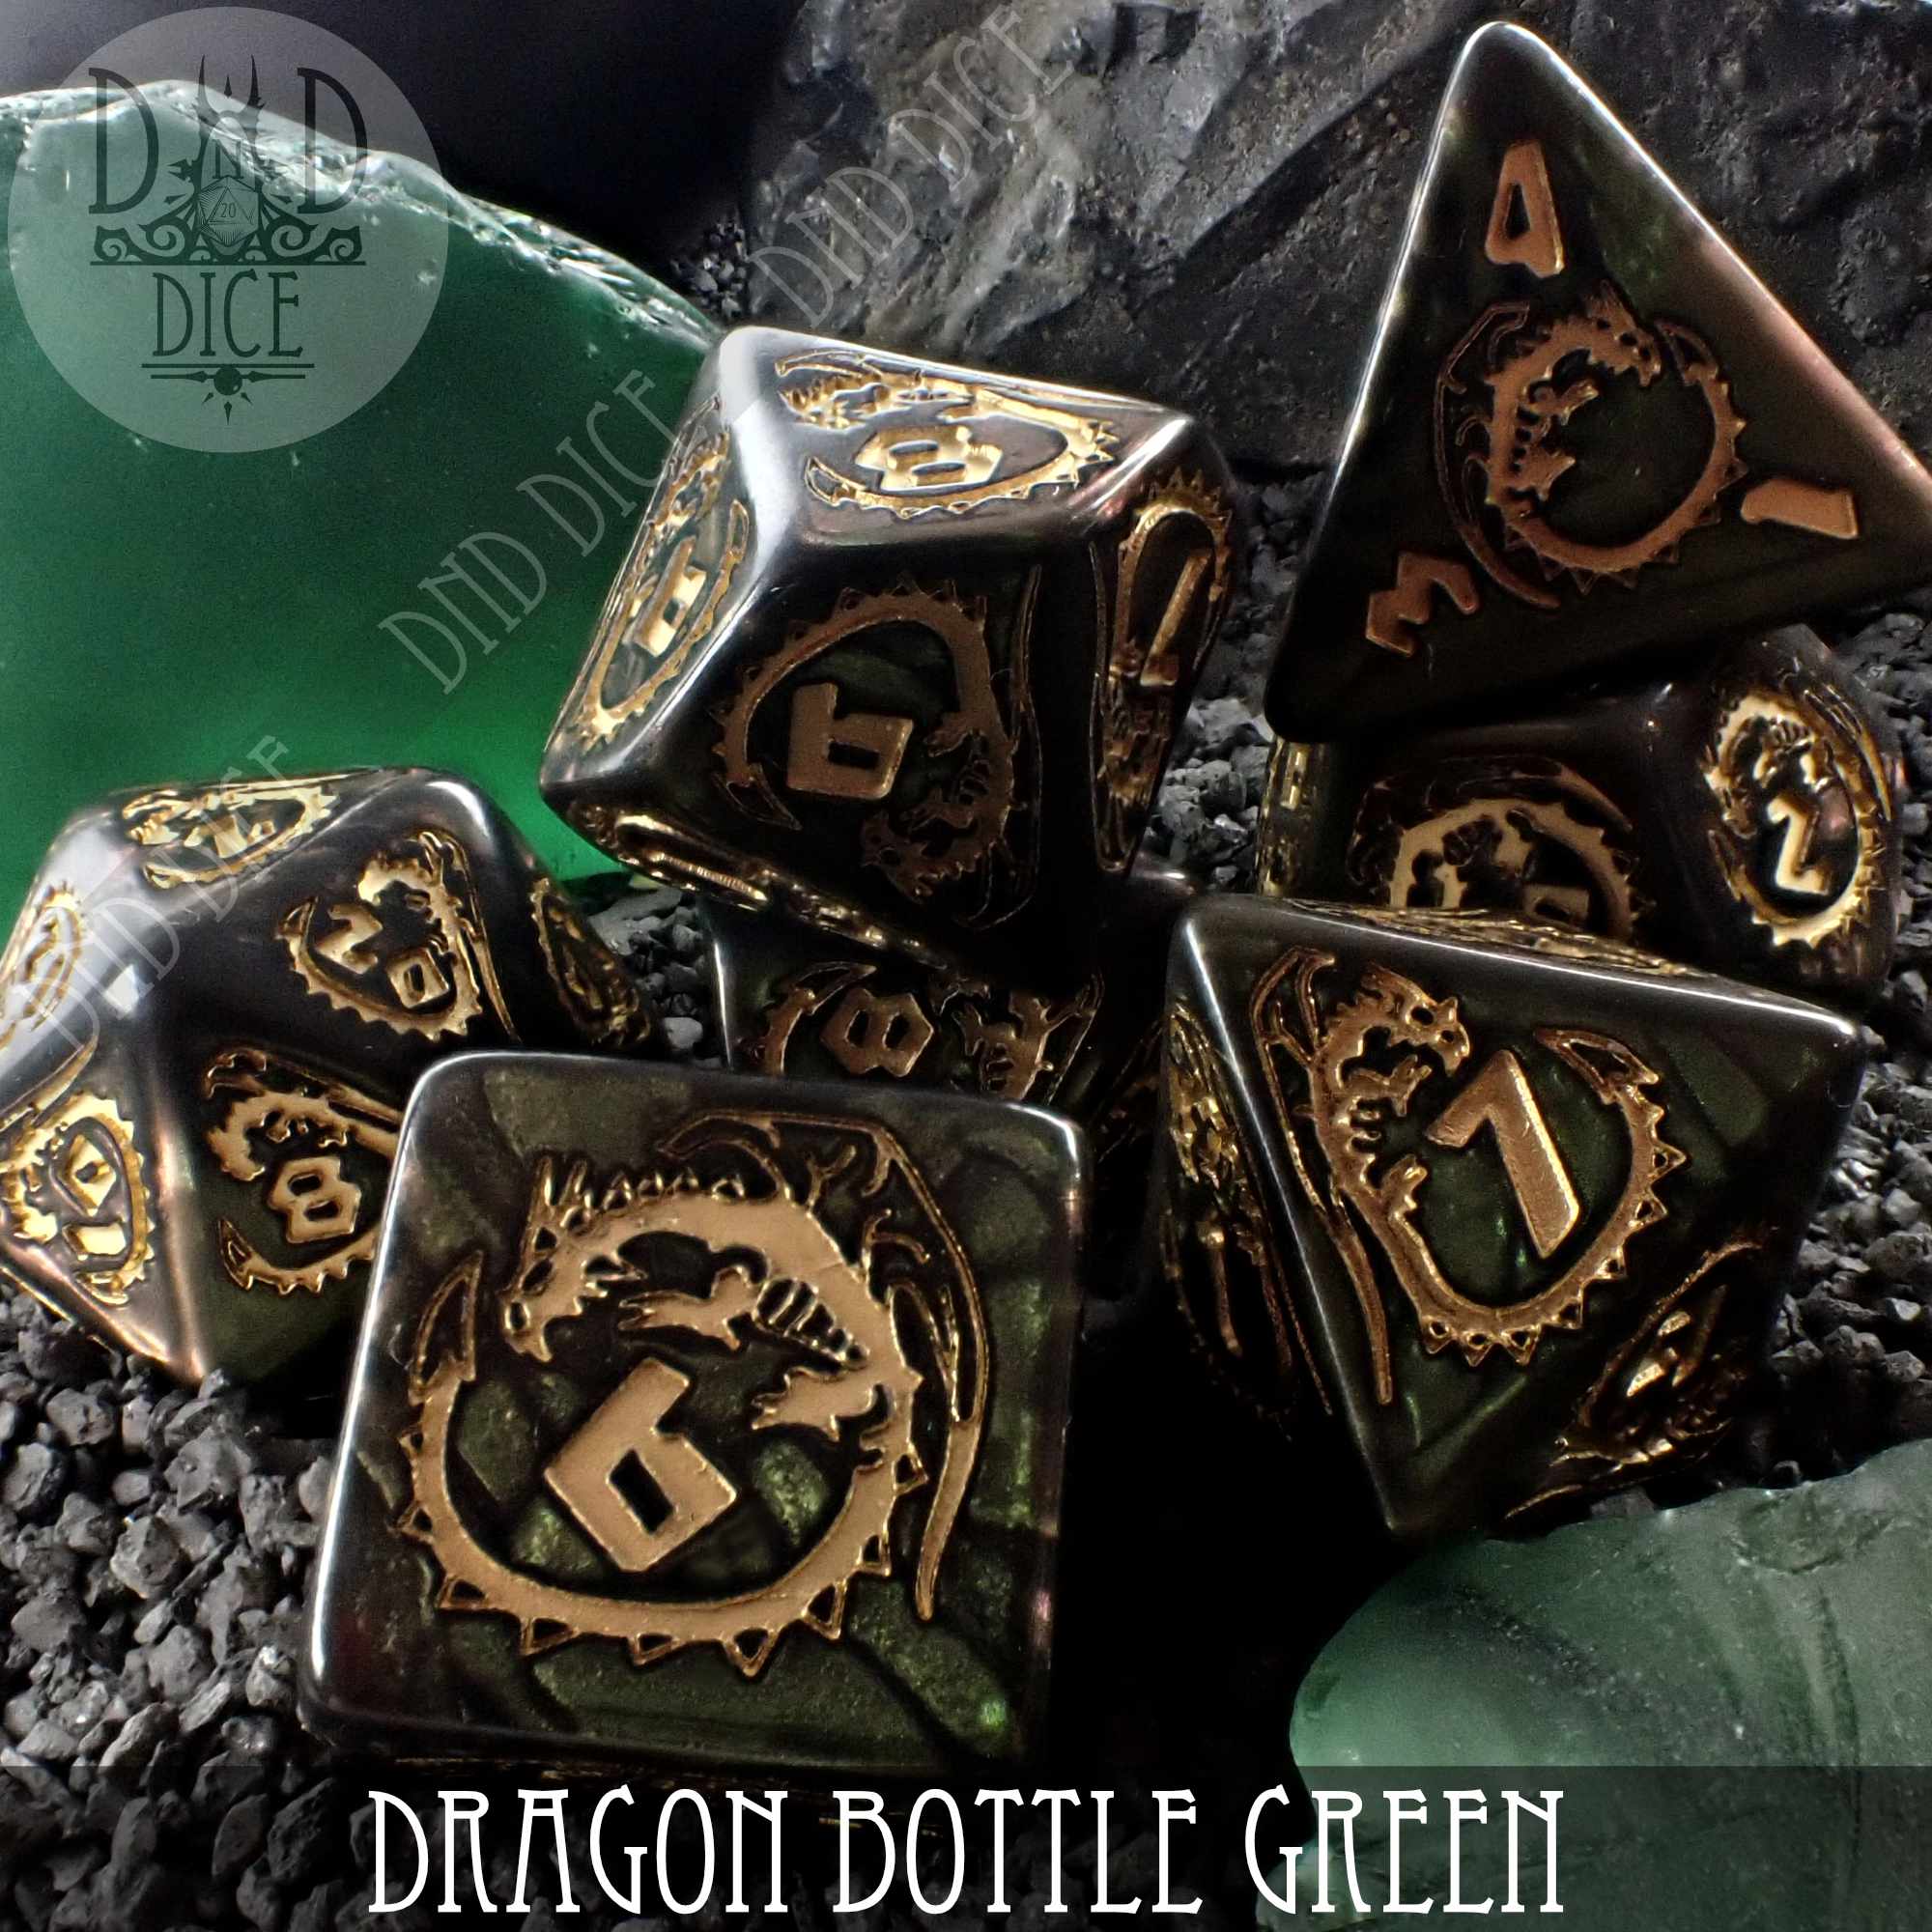 Dragon Nephrite (Bottle Green)